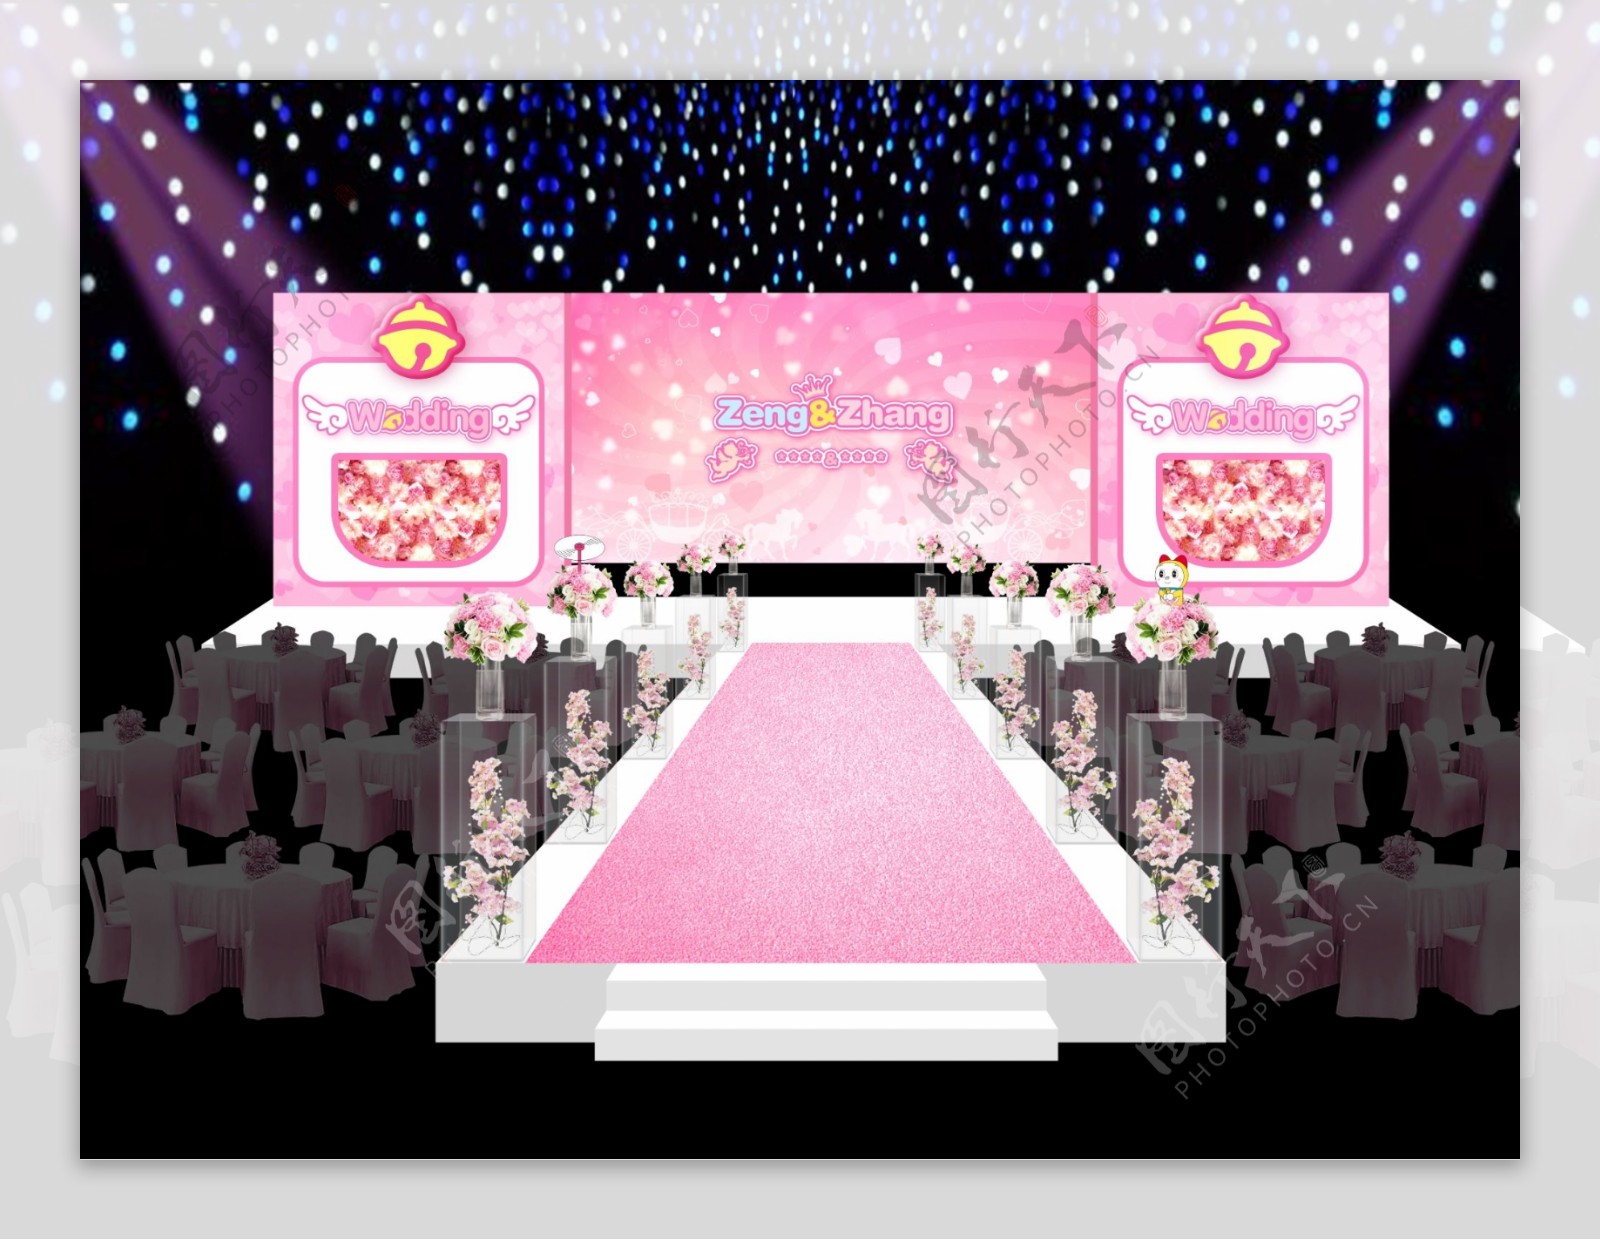 粉色机器猫婚礼舞台效果图